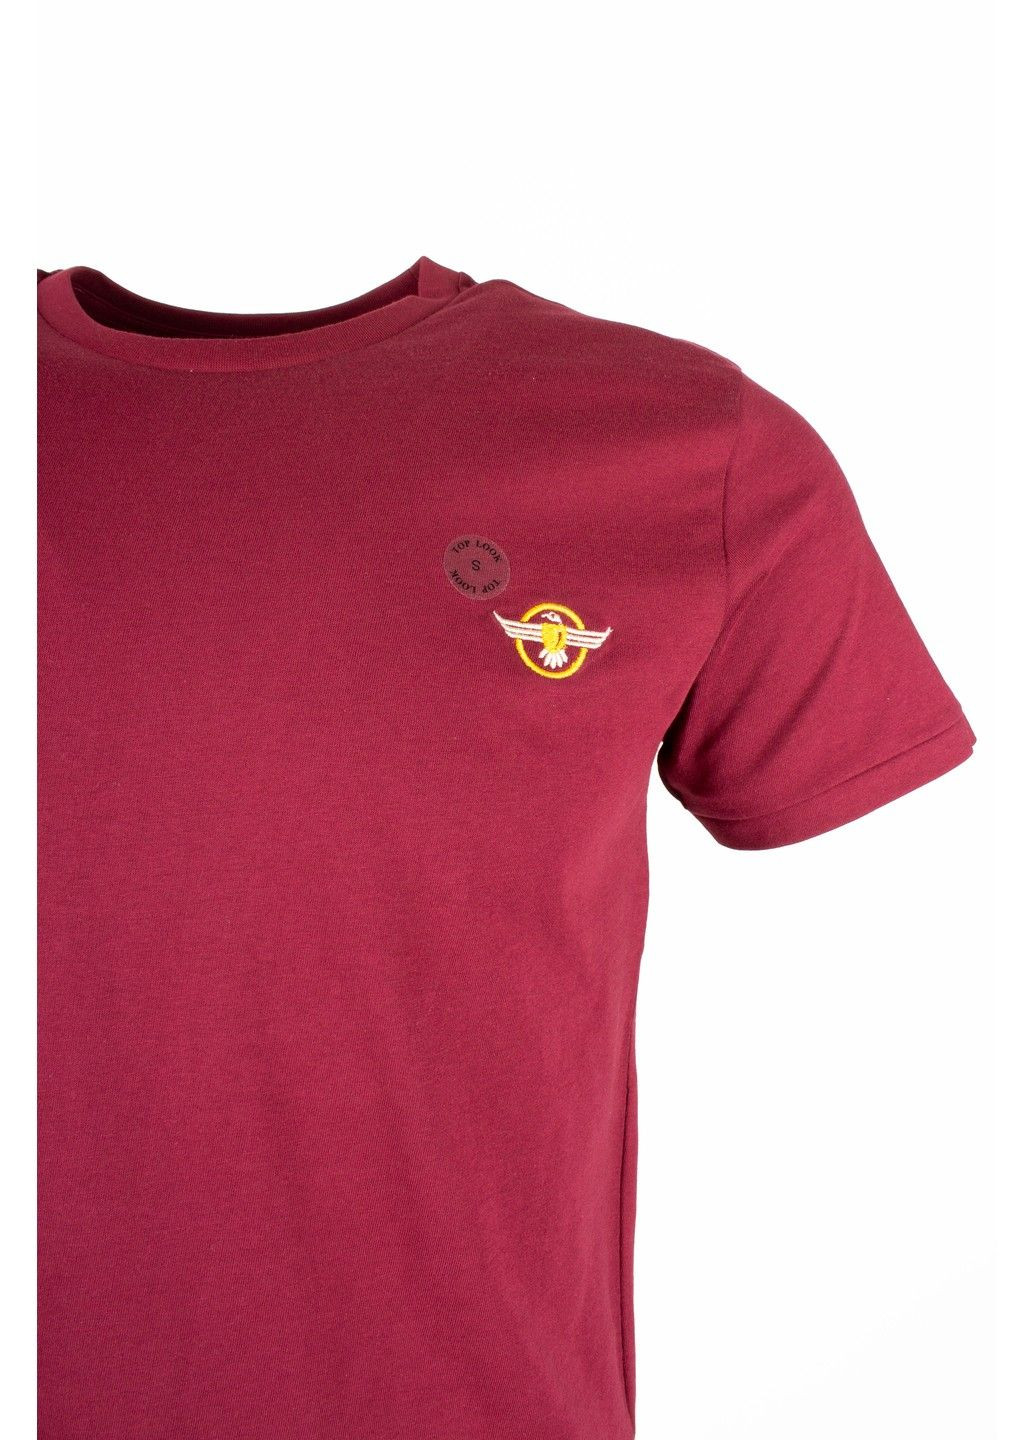 Бордовая футболка мужская top look бордовая 070821-001532 No Brand